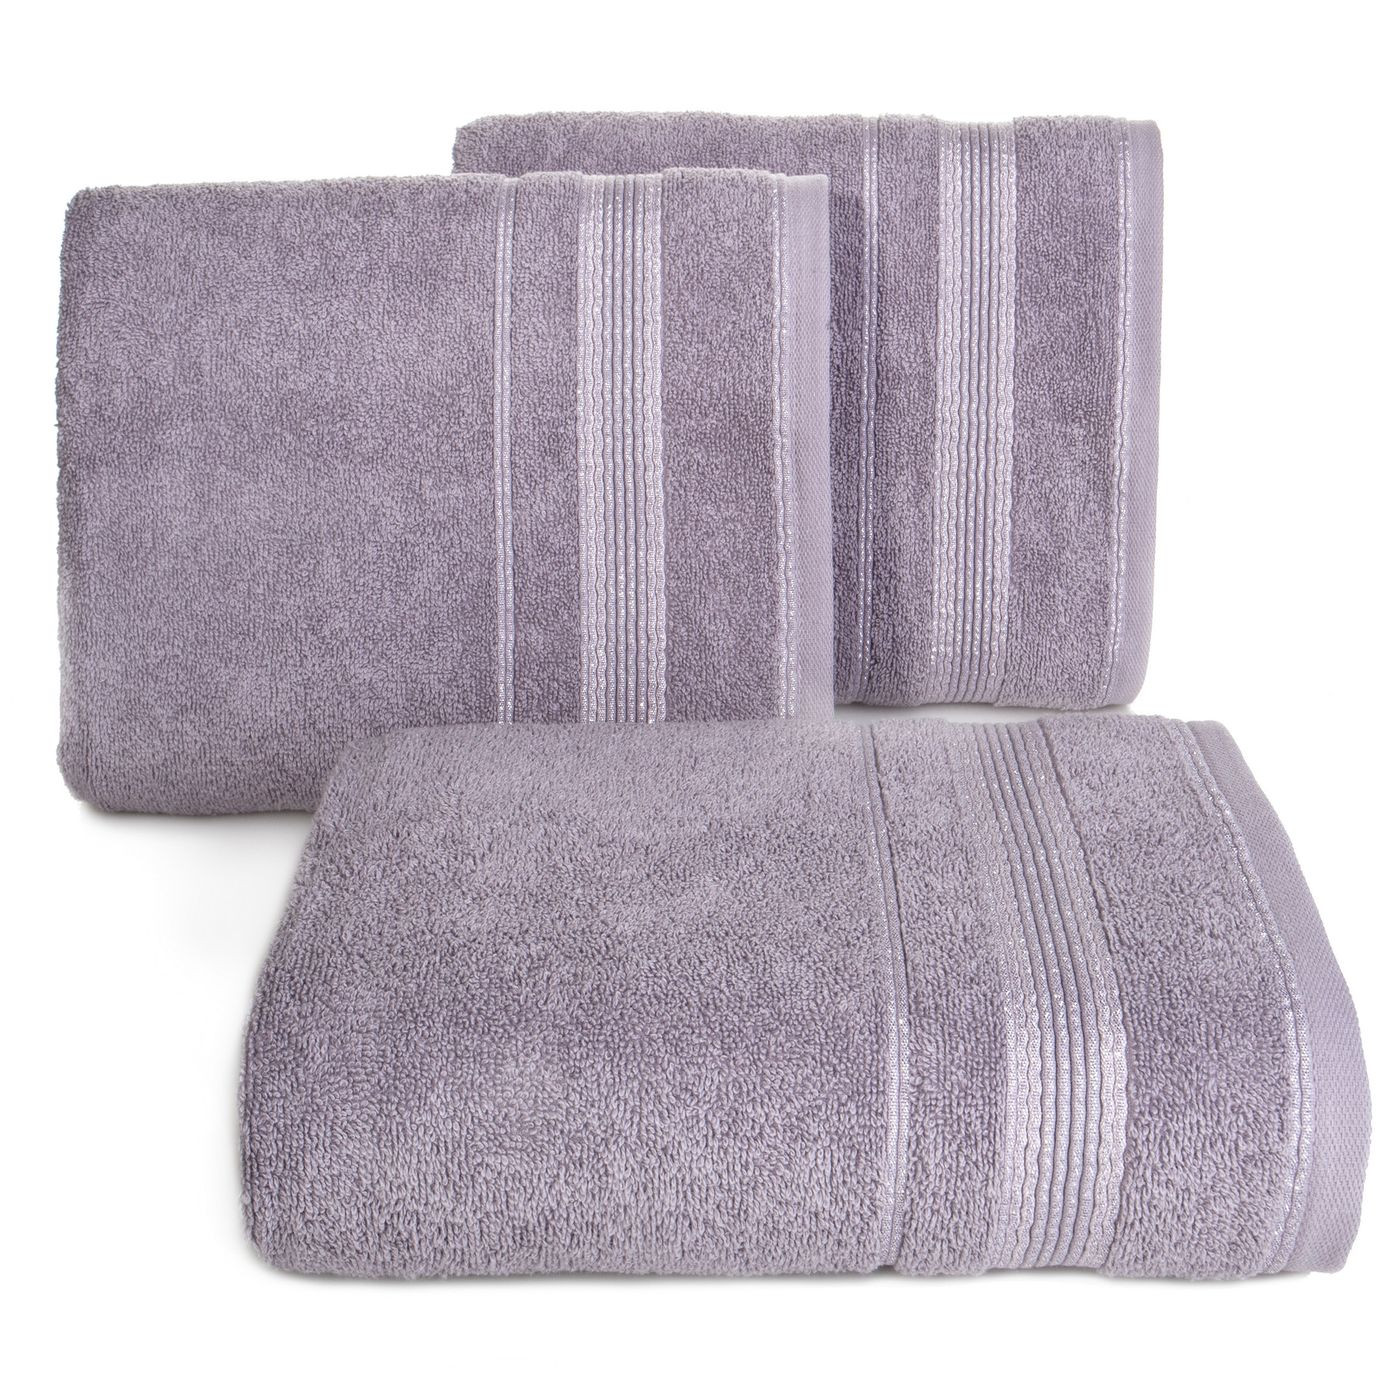 Ręcznik z bawełny z bordiurą podkreśloną srebrną nitką 50x90cm